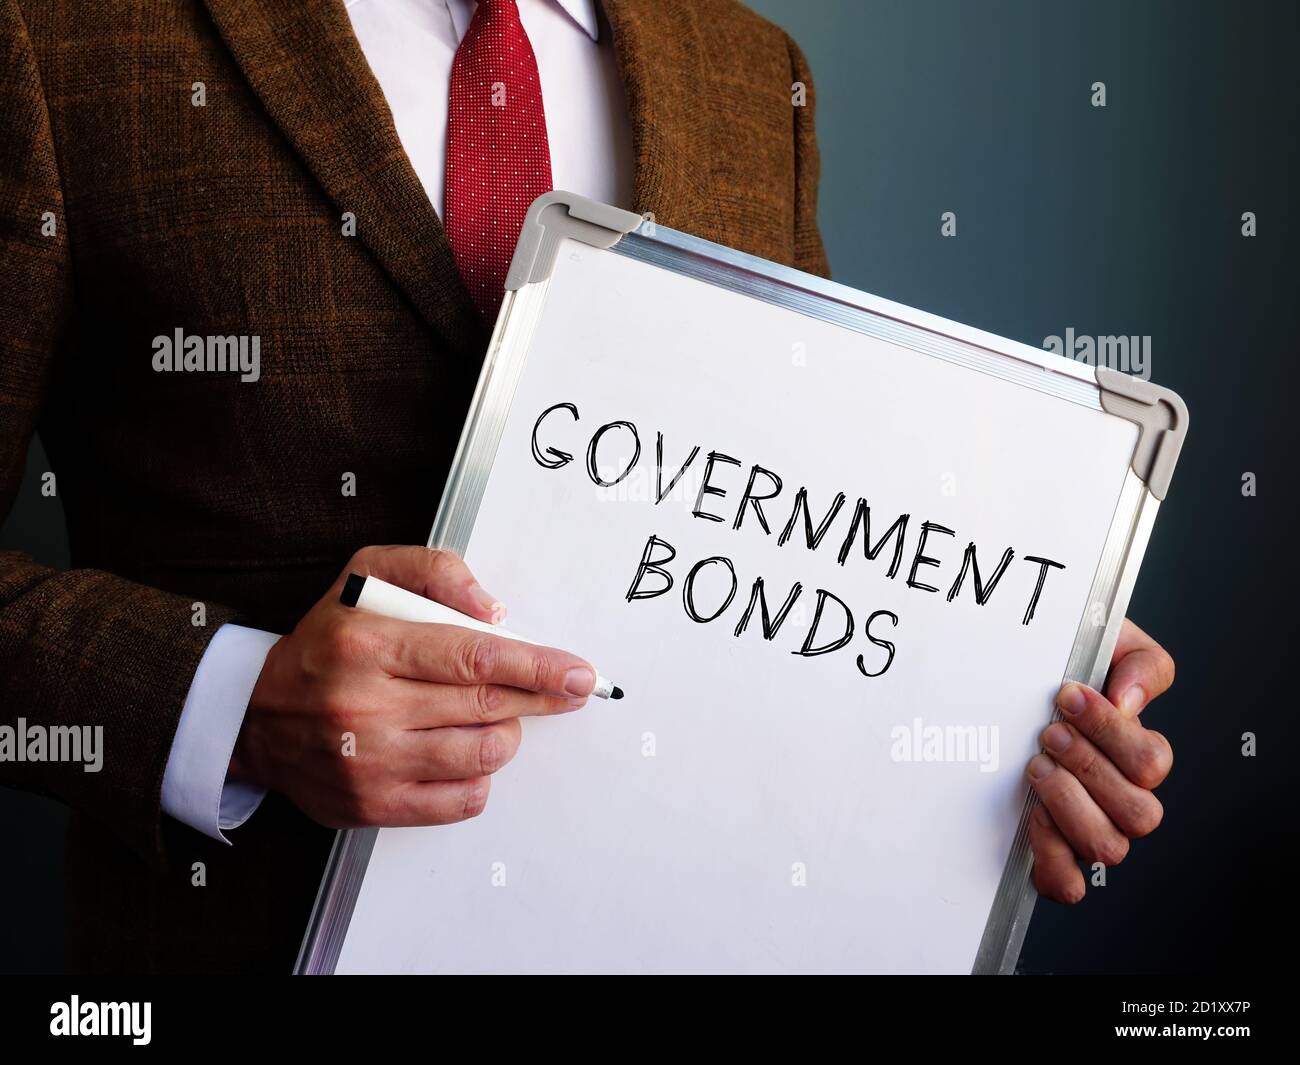 Staatsanleihen. Ein Finanzberater hält einen Vorstand mit der Inschrift. Stockfoto